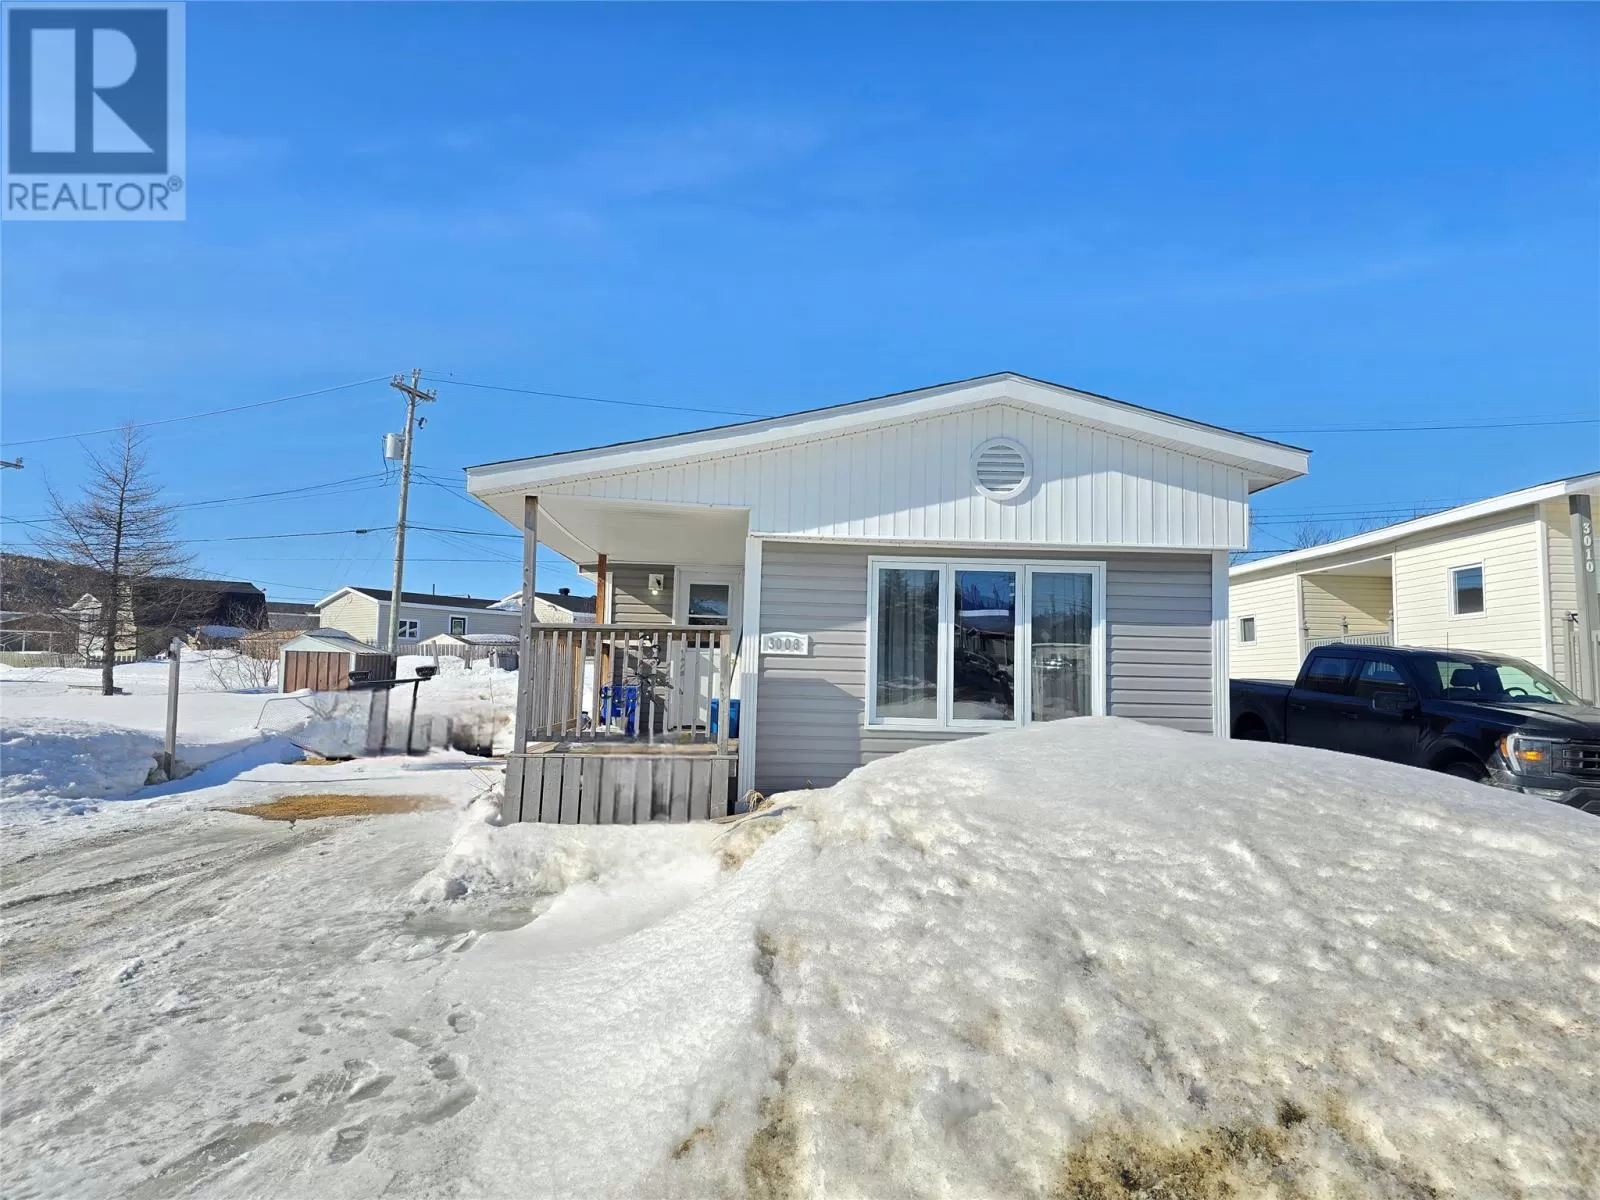 House for rent: 3008 Harrie Lake Drive, Labrador City, Newfoundland & Labrador A2V 2R6